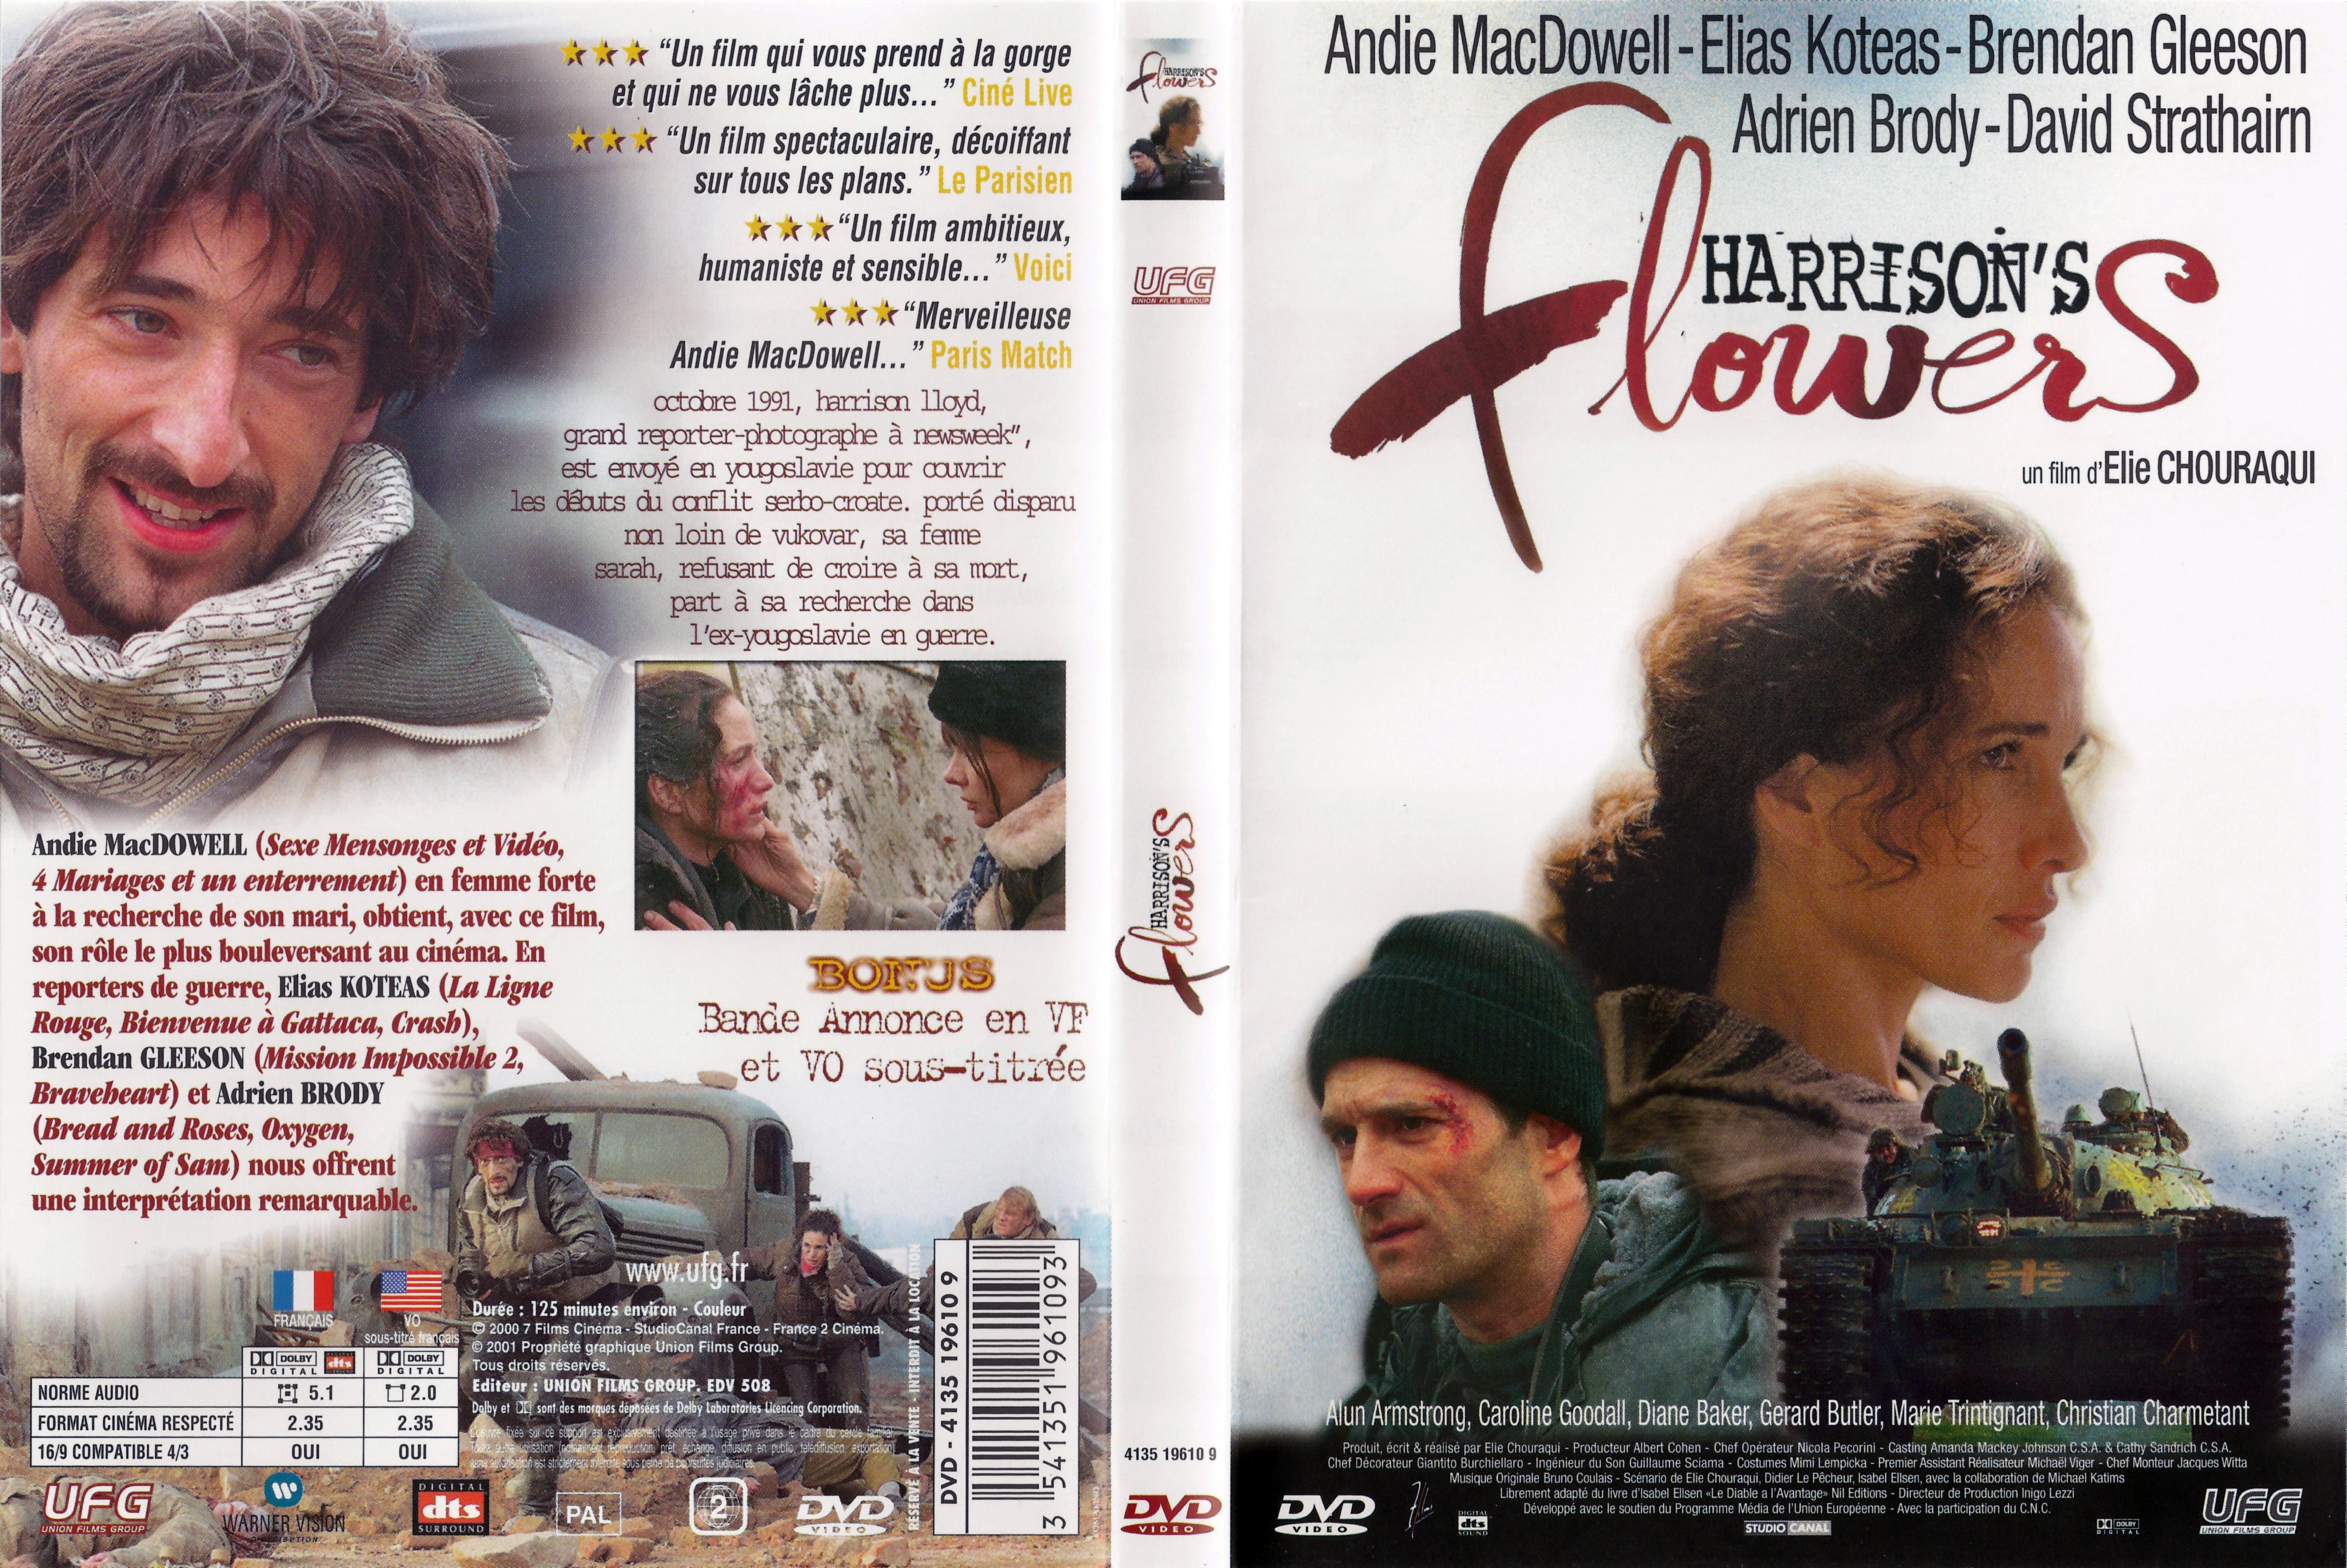 Jaquette DVD Harrison